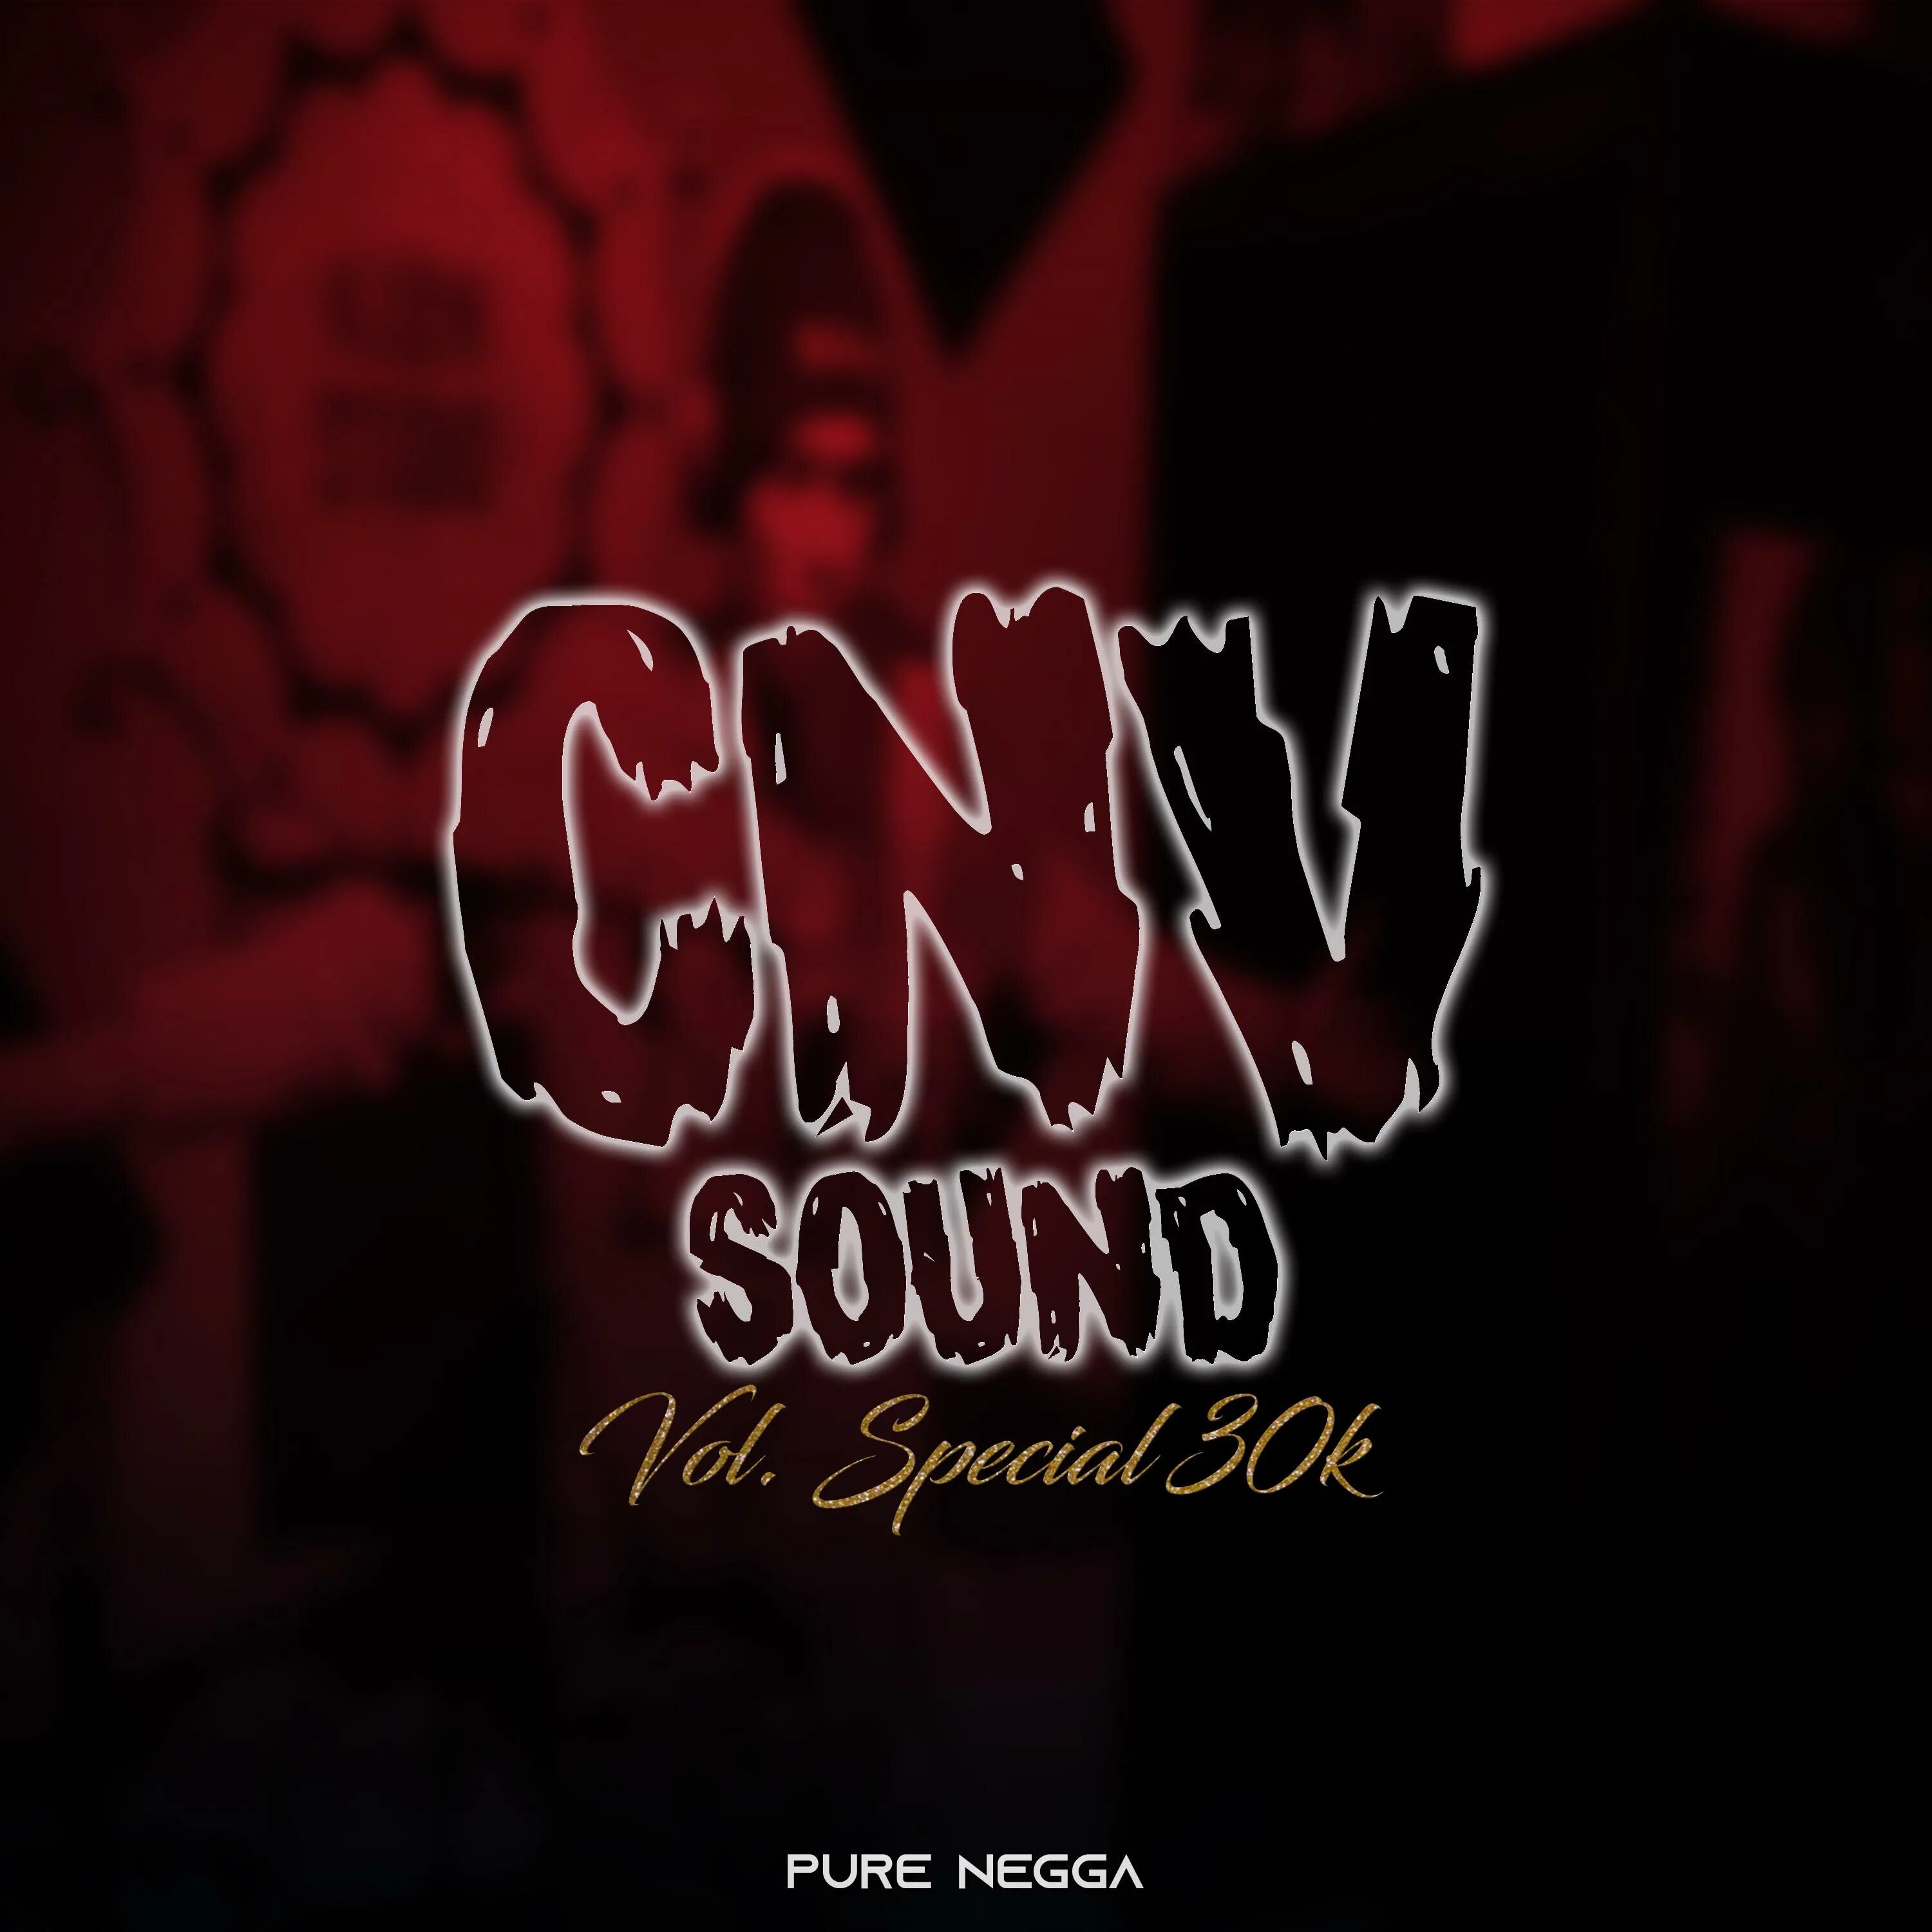 Pure negga skillz beatz vol 14. CNV Sound, Vol. 14 Pure Negga. CNV Sound Vol 14. Песня Pure Negga. CNV Sound, Vol. 14 обложка.